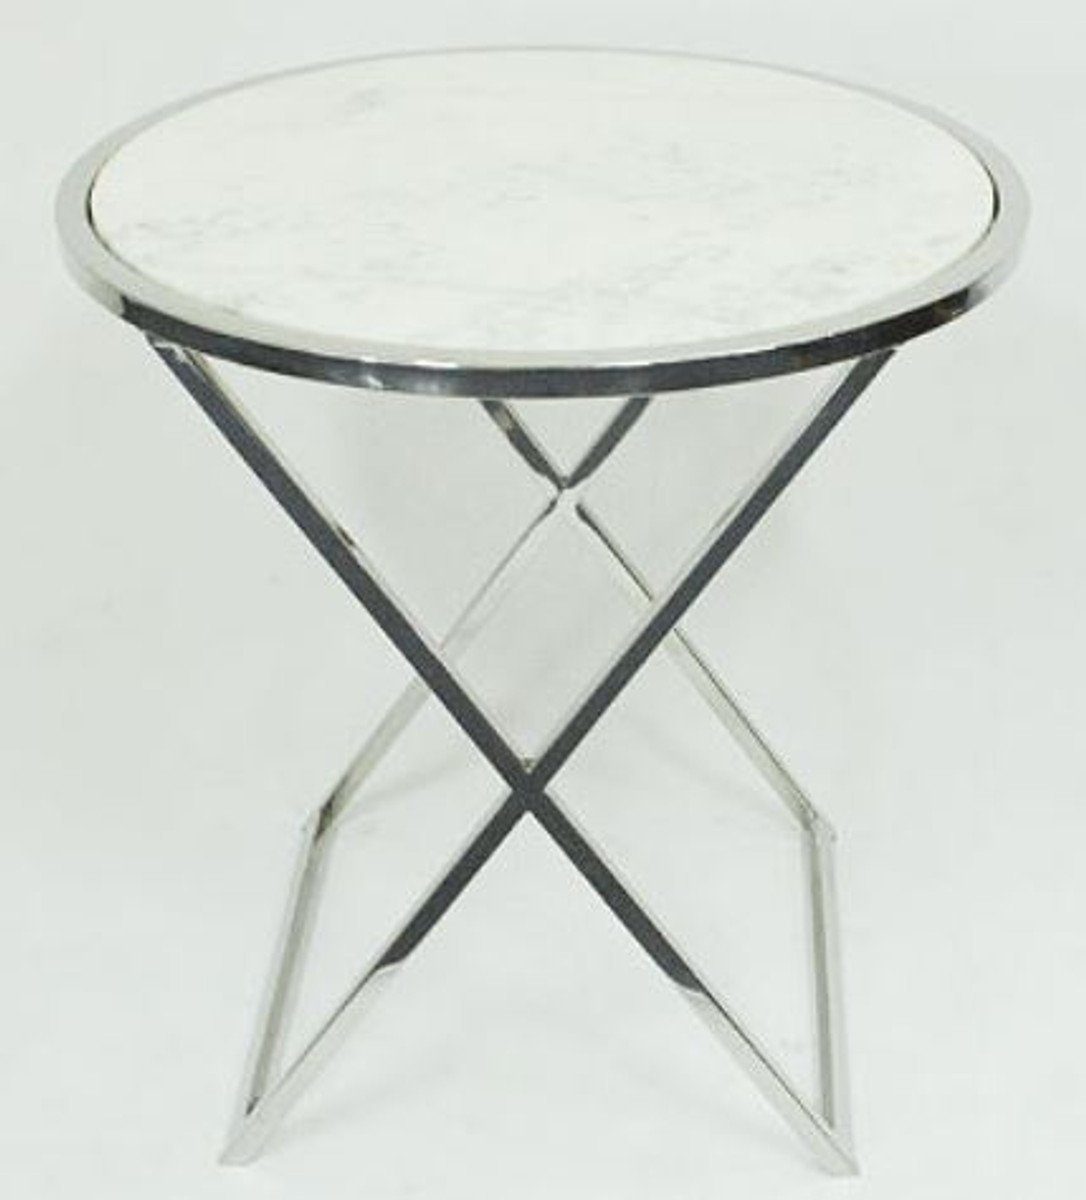 Casa Padrino Beistelltisch Beistelltisch Silber / Weiß Ø 61 x H. 61 cm - Beistelltisch mit weißer Marmorplatte